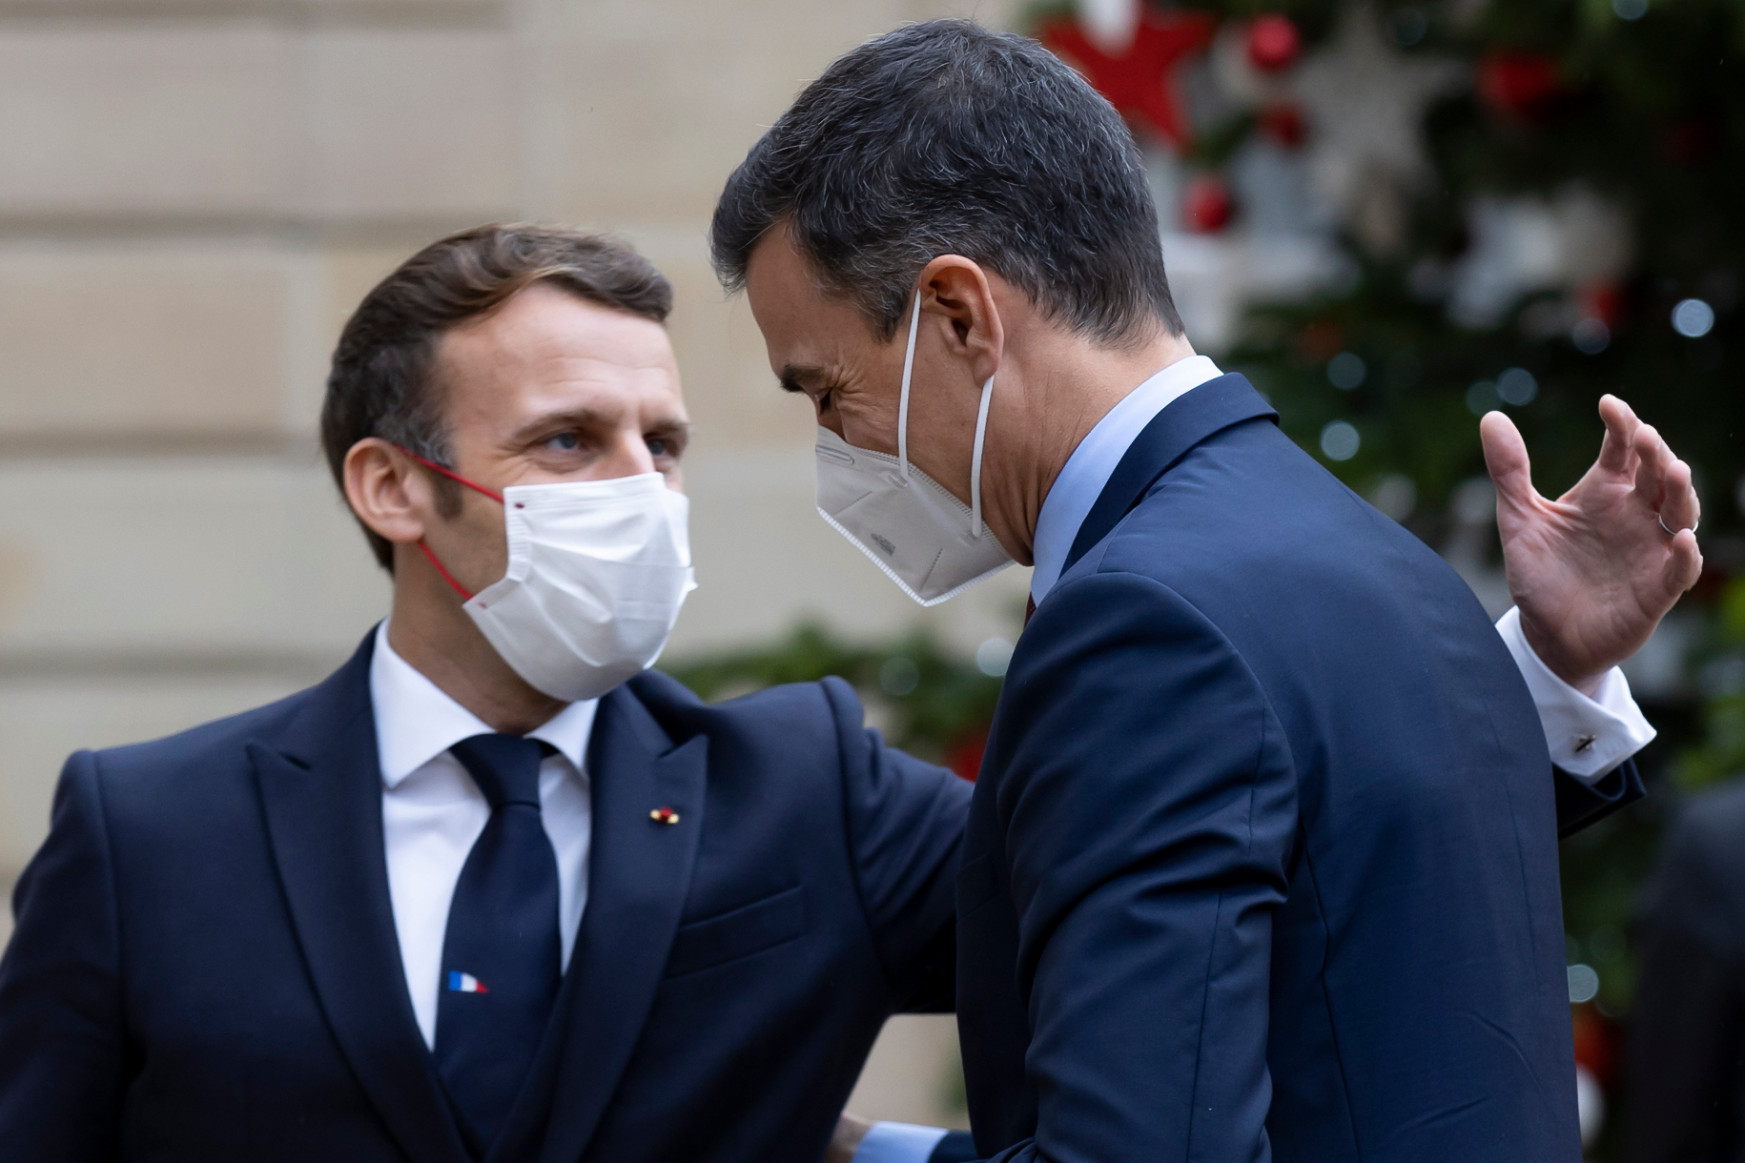 Sorra vonulnak karanténba az európai vezetők, miután találkoztak a covidos Macronnal